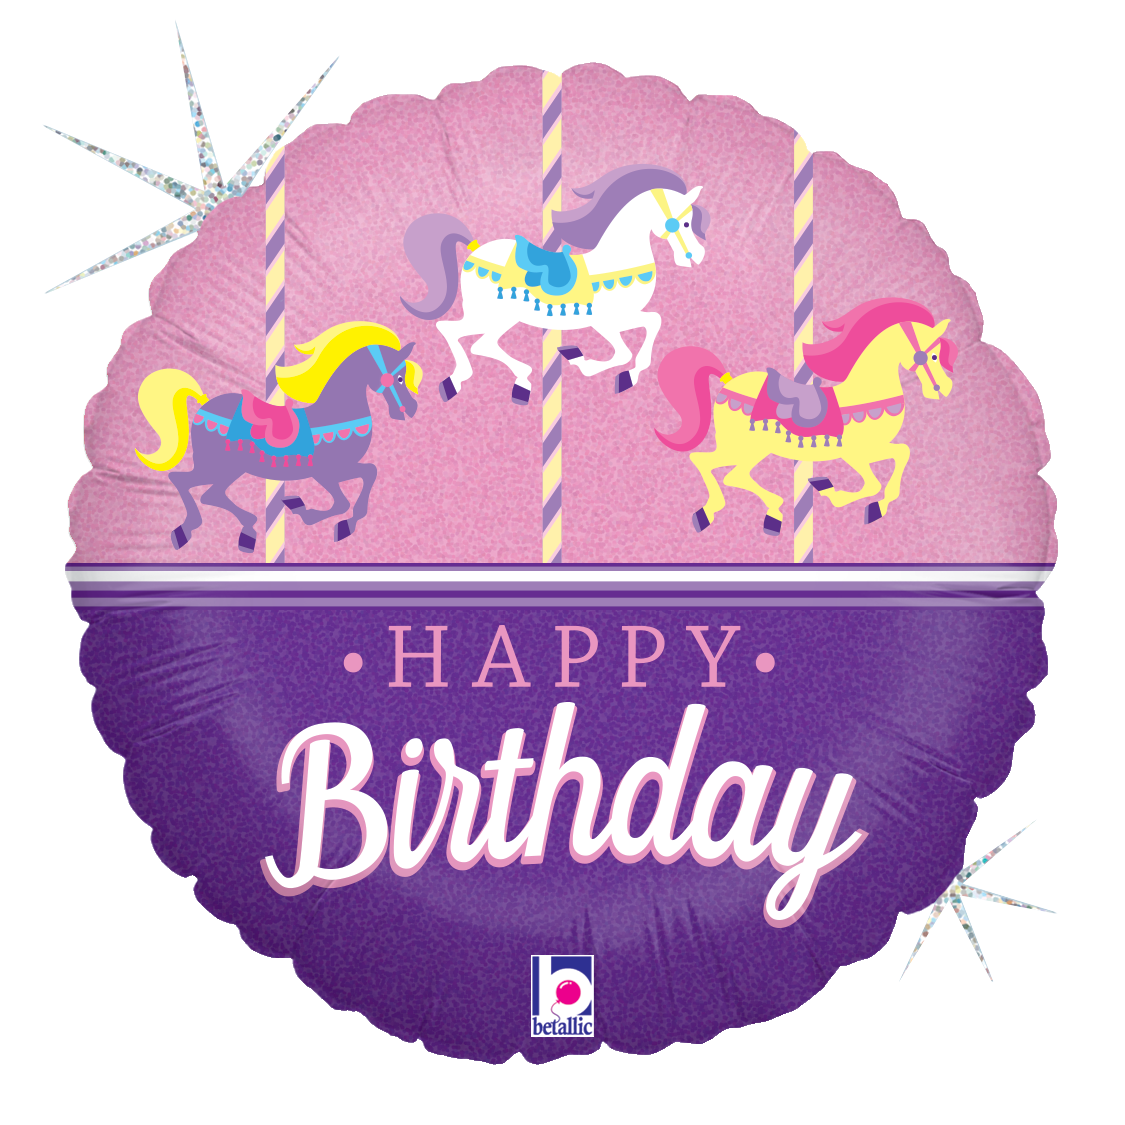 Happy Birthday - Unicorn Carousel